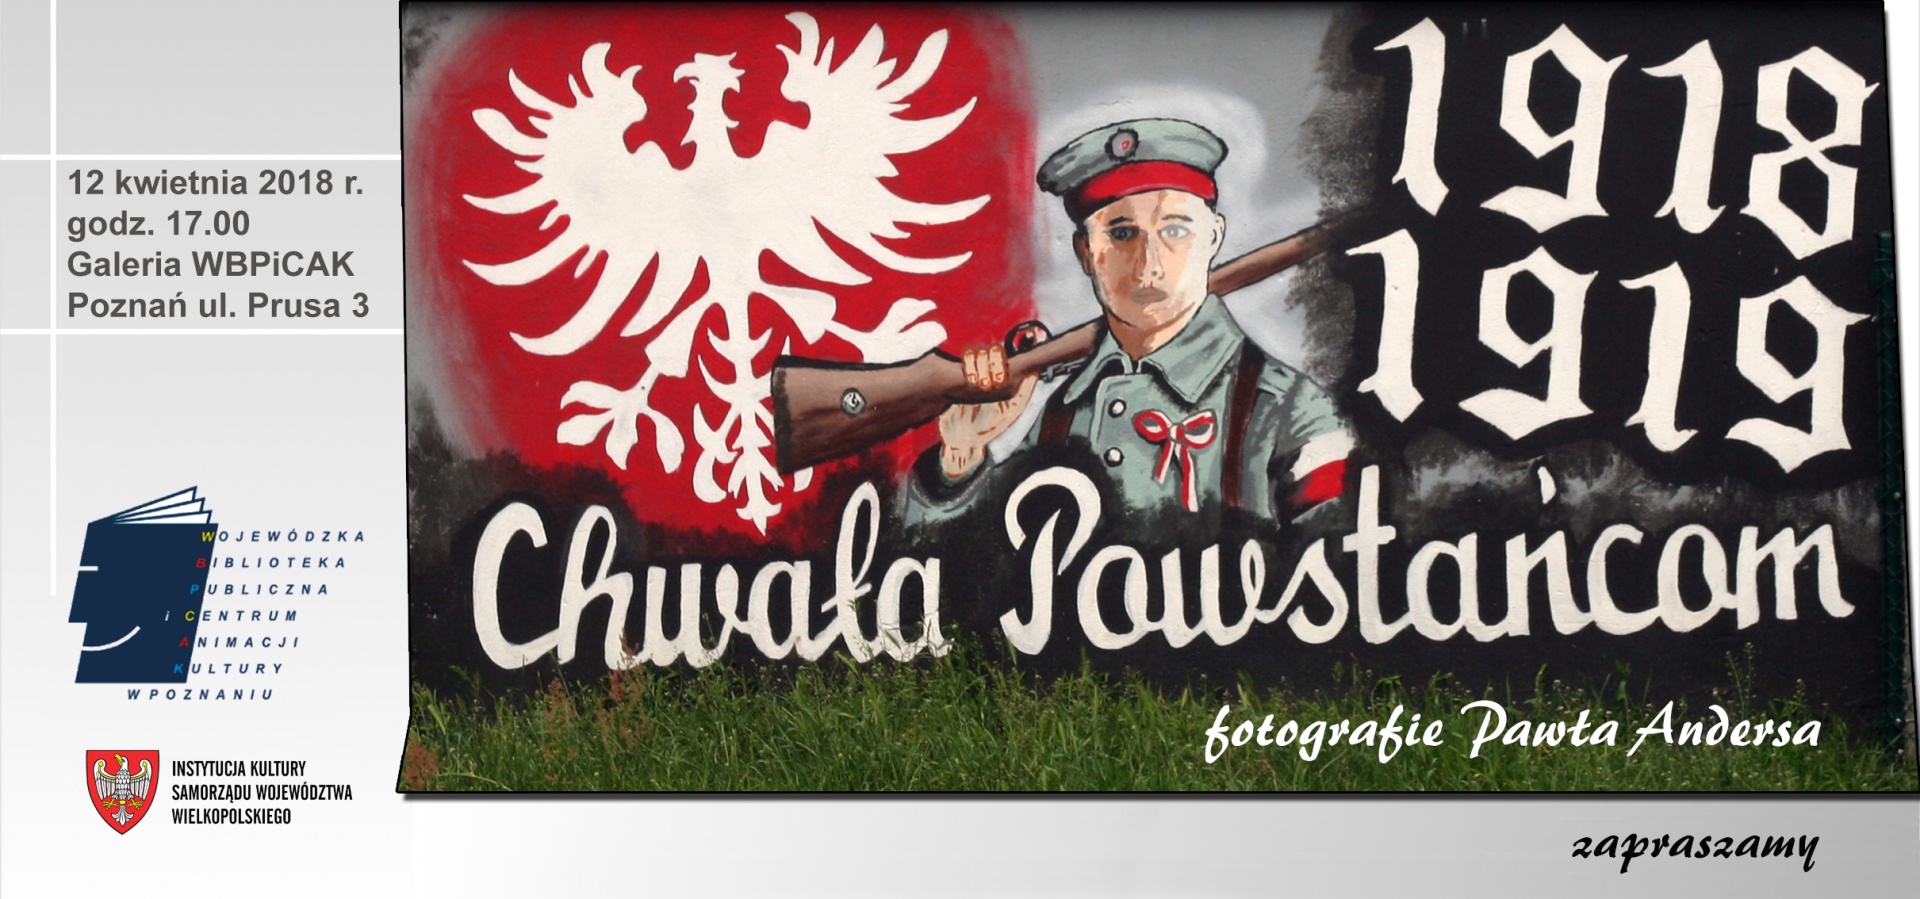 Zdjęcie przedstawia mural na którym jest postać powstańca wielkopolskiego, orła na czerwonym tle i napis 1918 1918 chwała powstańcom